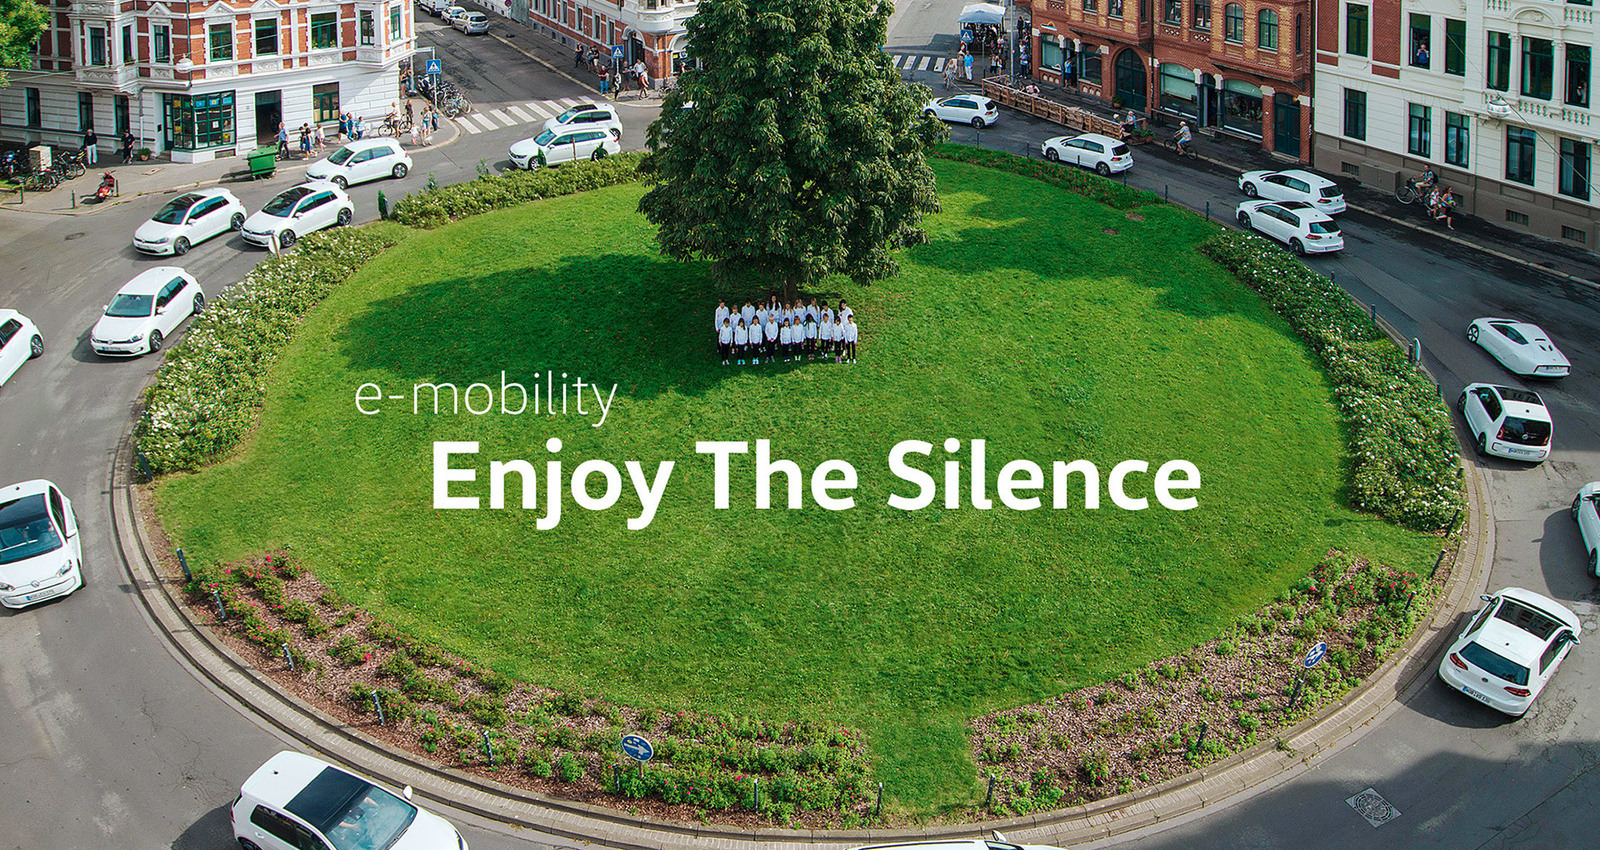 e-mobility - Enjoy The Silence